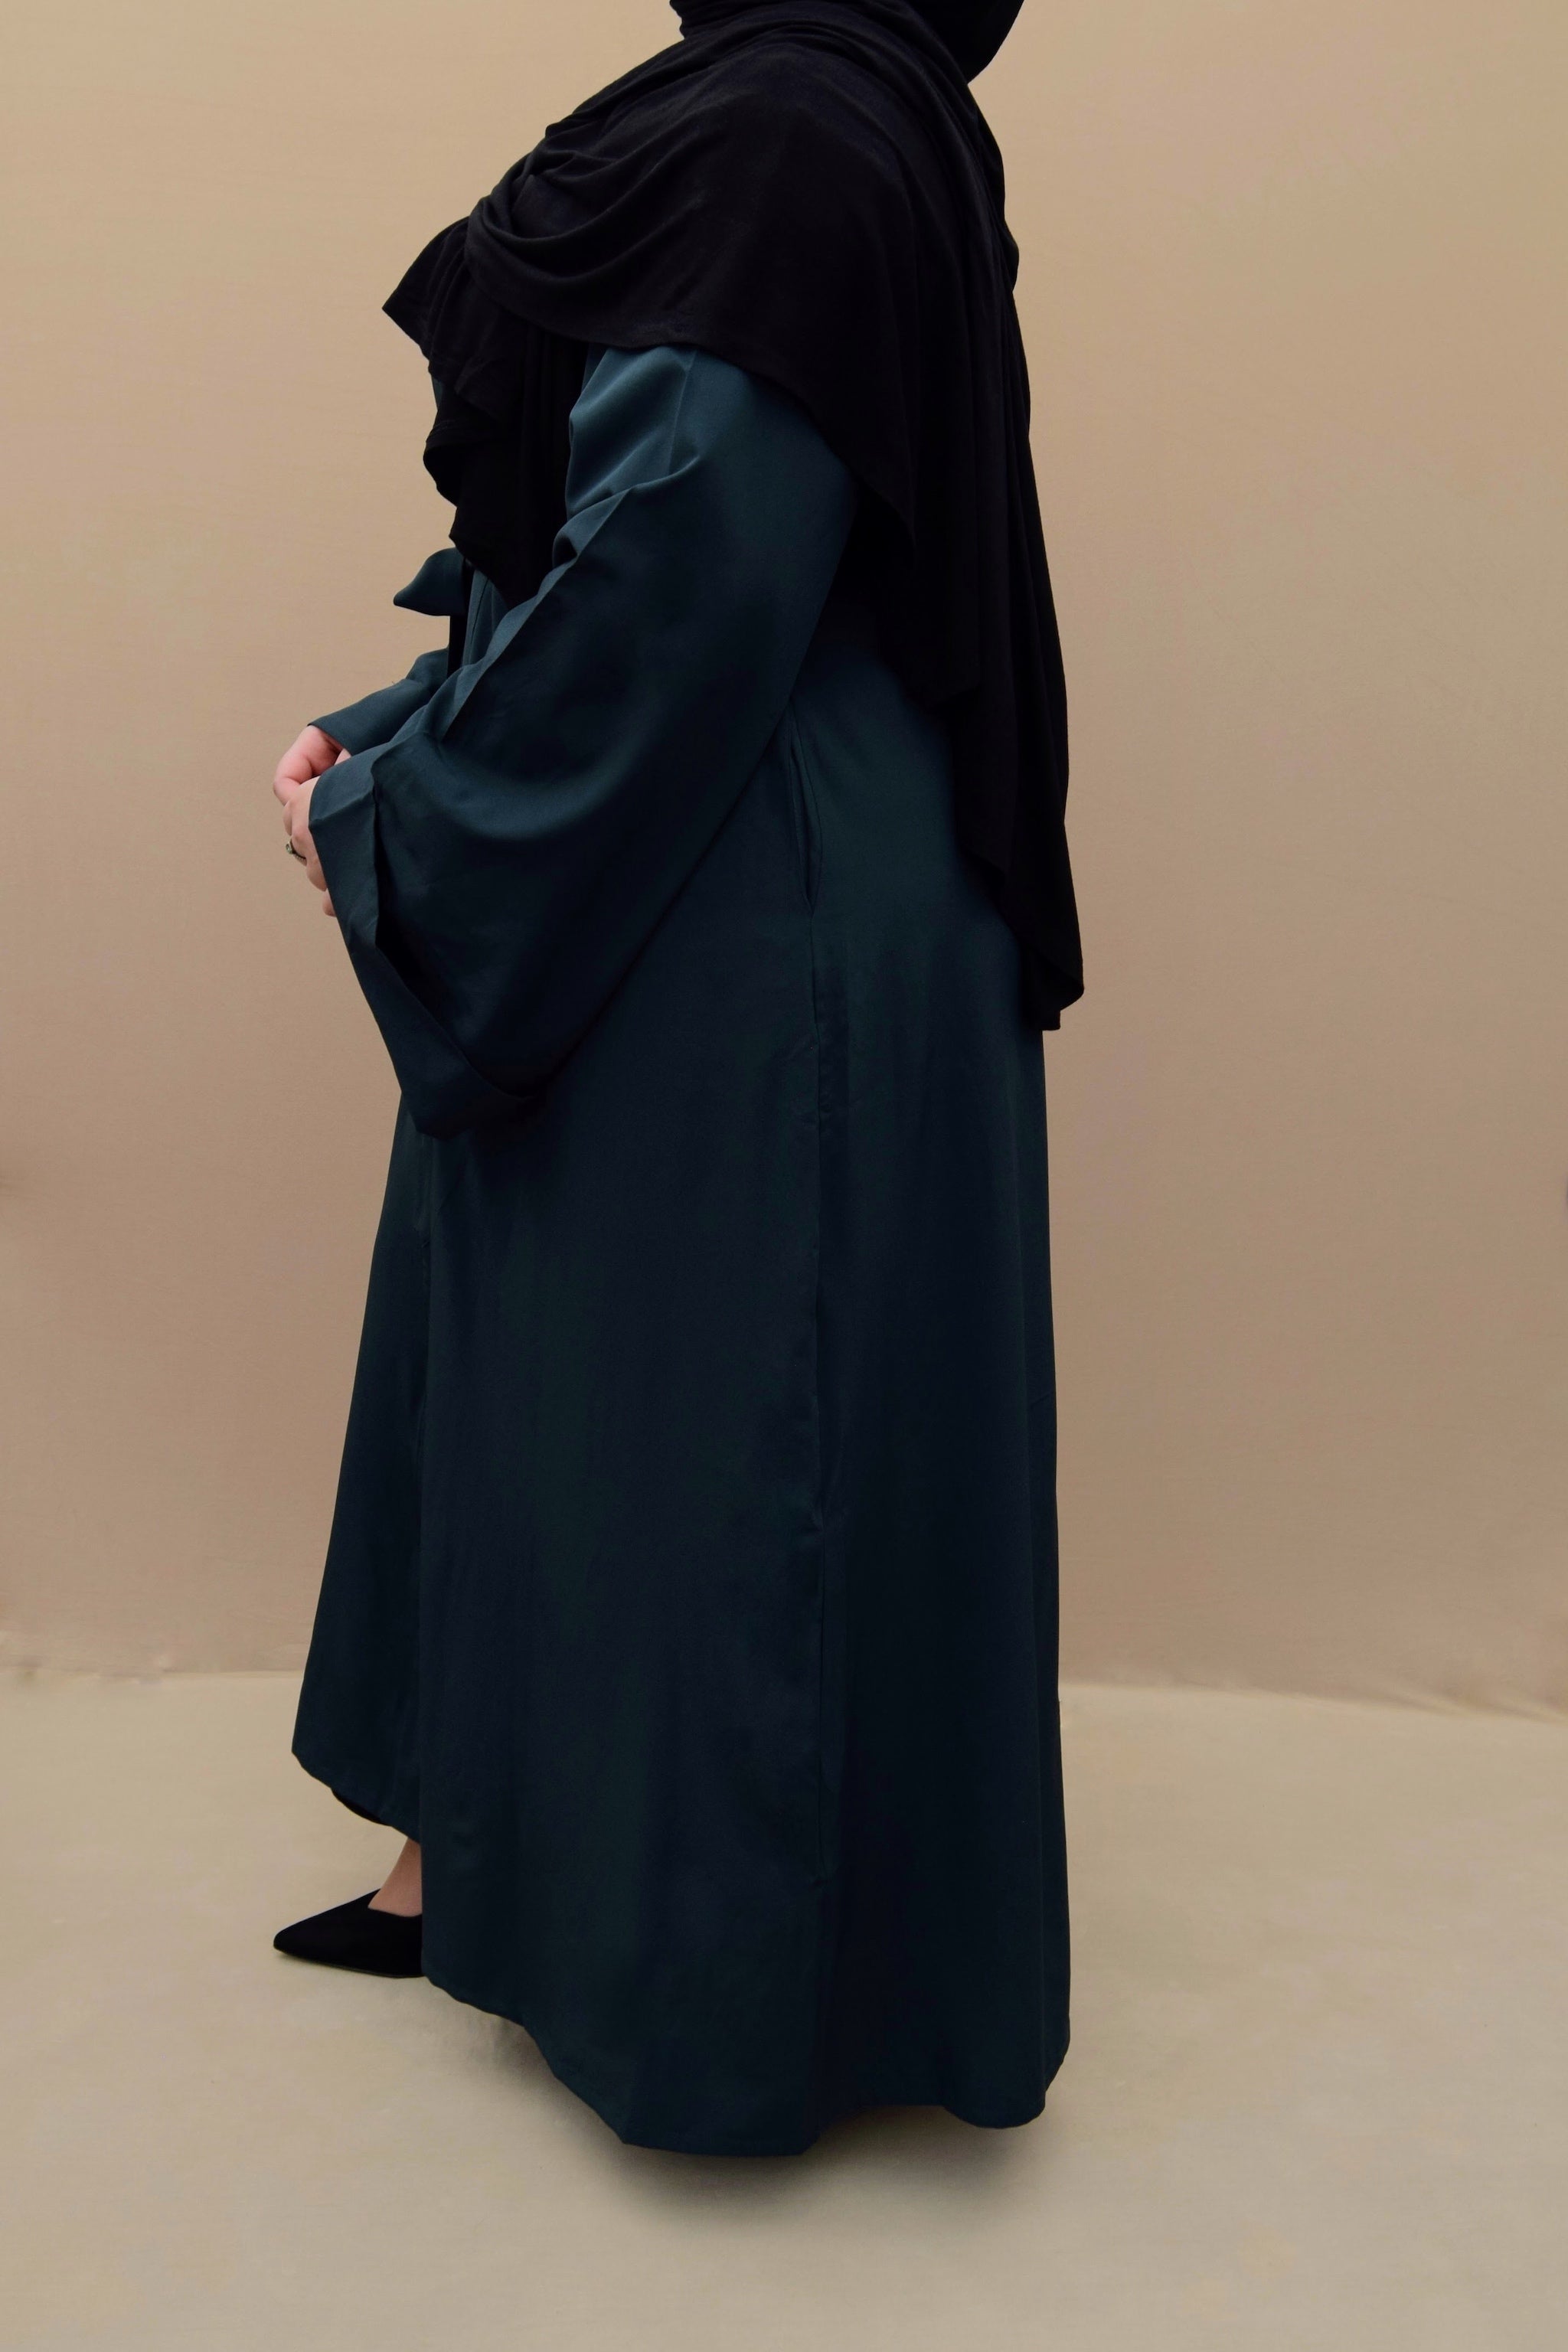 Classic Dark Green Open Abaya – A A Y A H